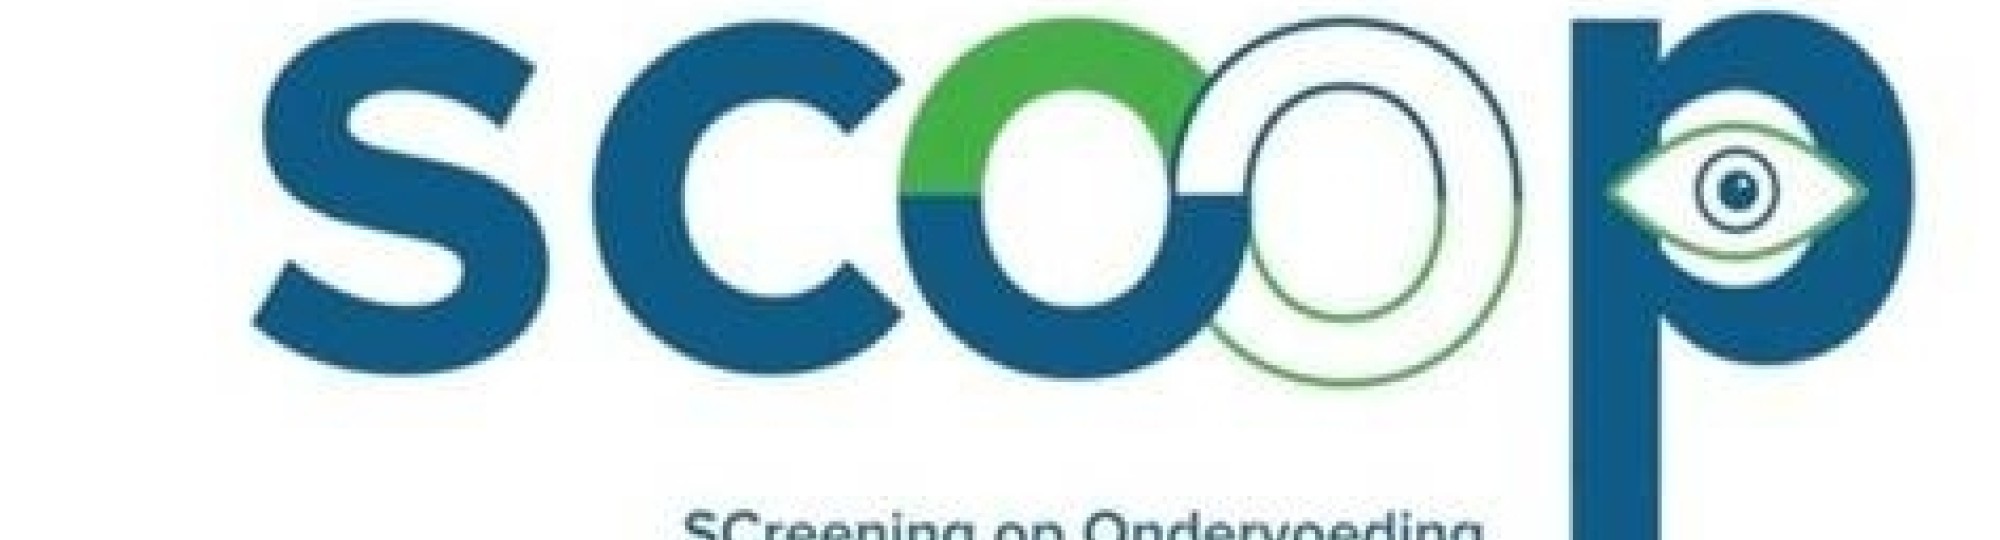 Logo Scoop project: Screening op Ondervoeding en Obestitas bij Patiënten.